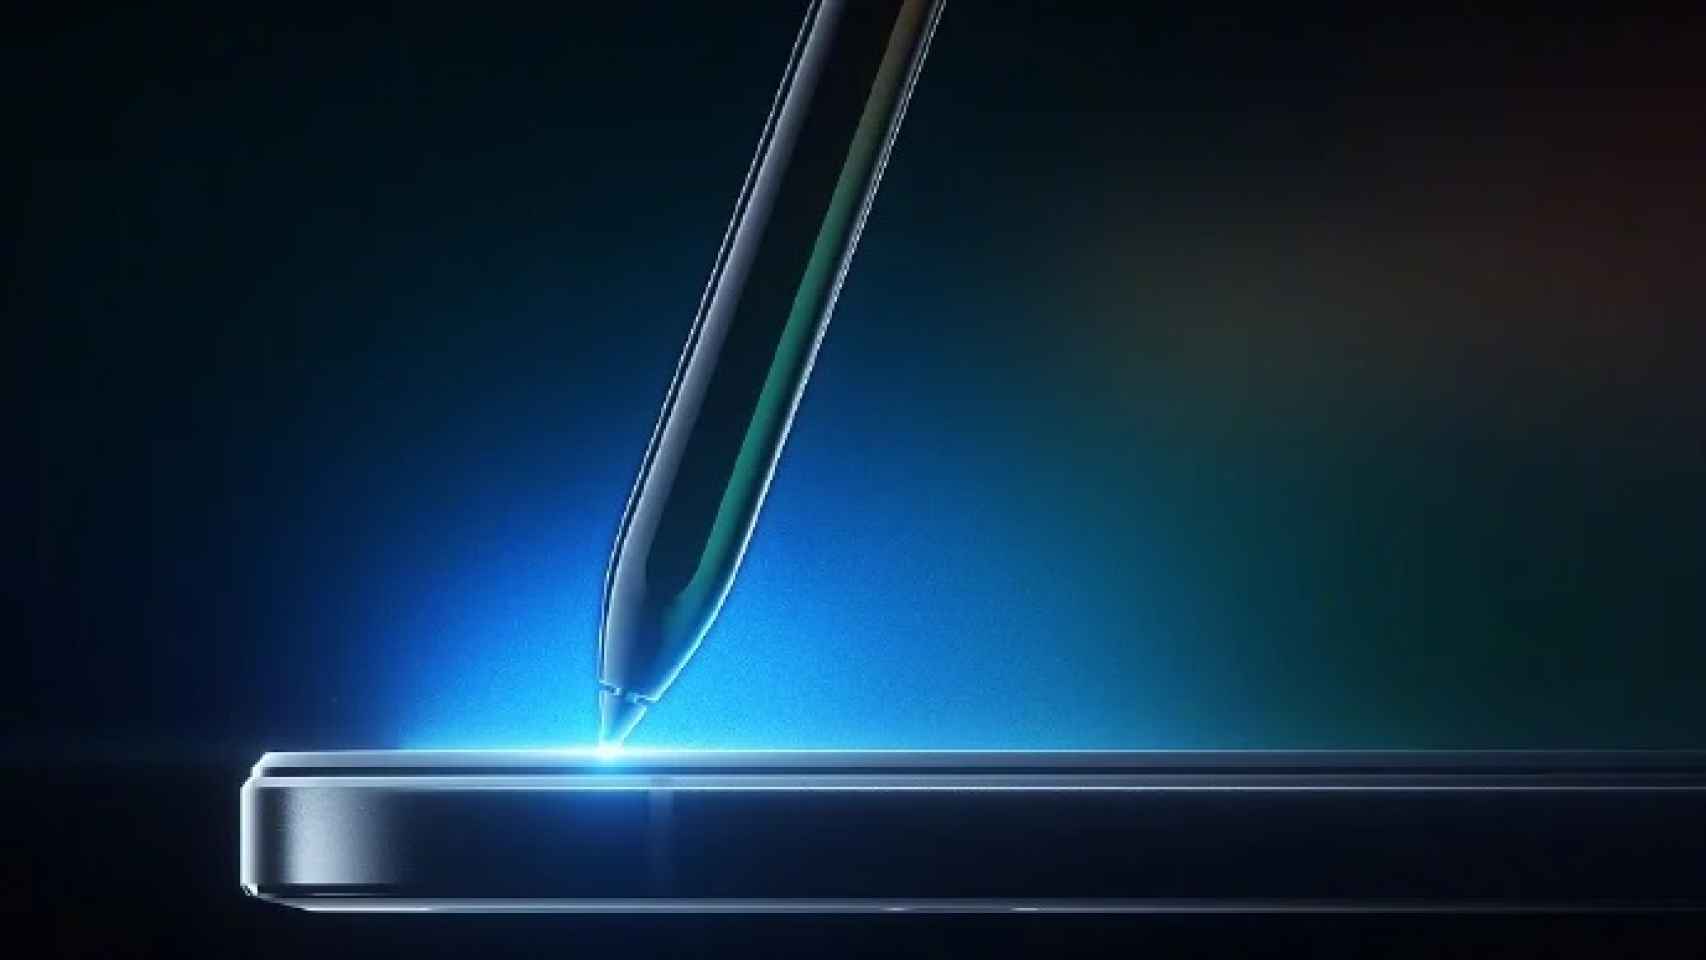 La Xiaomi Mi Pad 5 se presentará el 10 de agosto: primera imagen